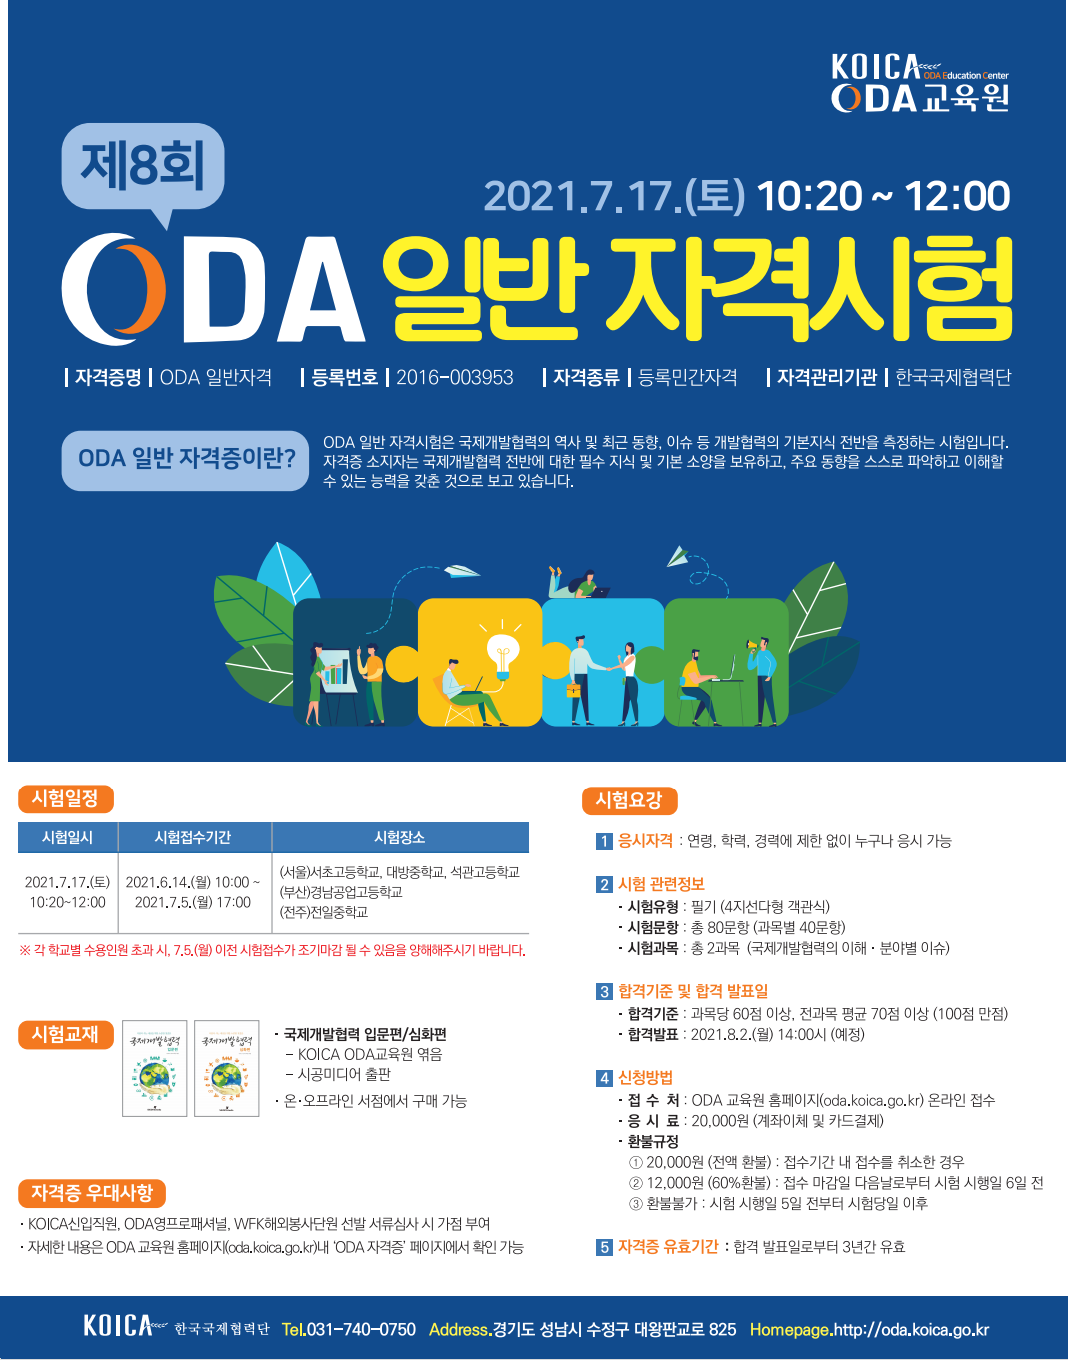 [글로벌센터] 제8회 ODA 일반 자격시험 안내 첨부파일  - 제8회 ODA 일반 자격시험 포스터.png